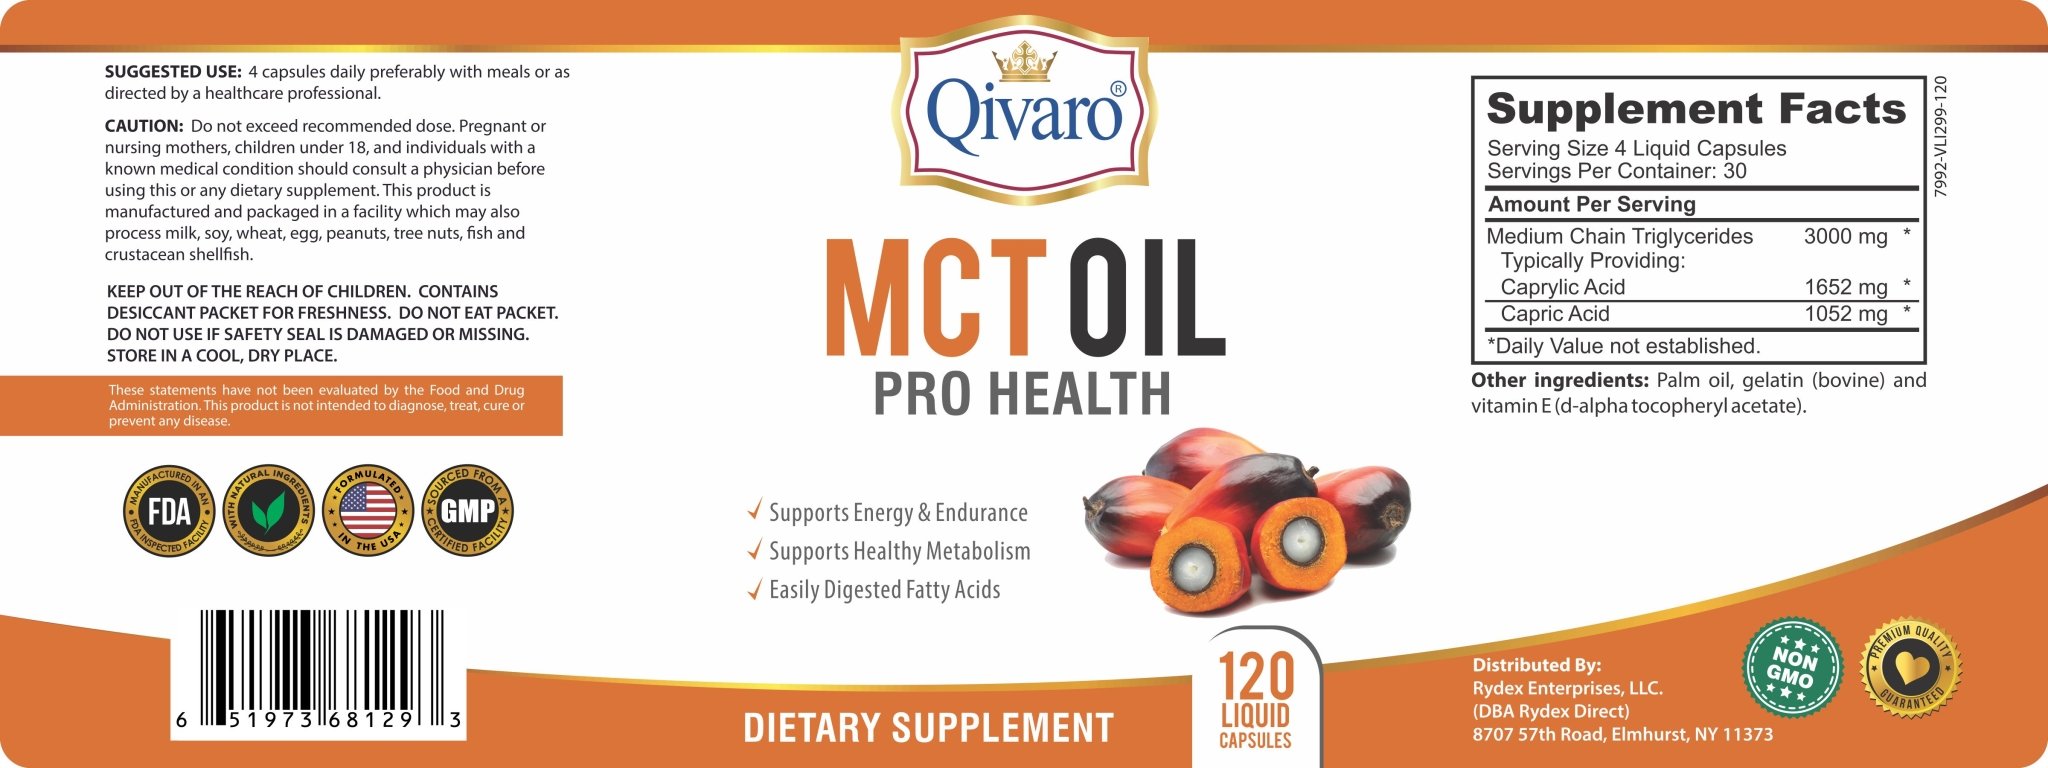 MCT Oil Pro Health - (120 Liquid Capsules) - Qivaro USA